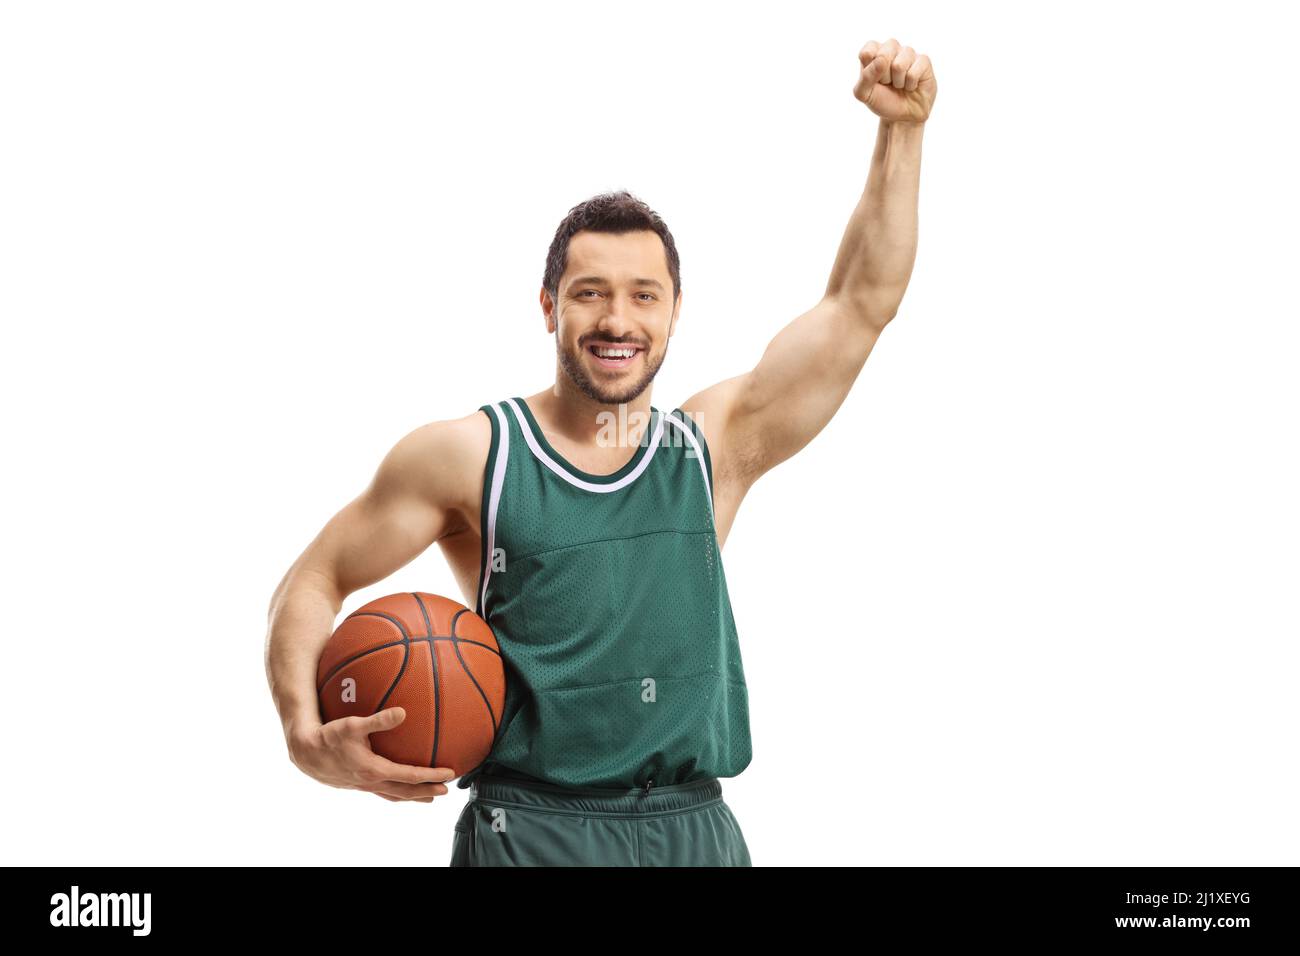 Un joueur de basket-ball gai qui fait le geste de gagner avec la main isolée sur fond blanc Banque D'Images